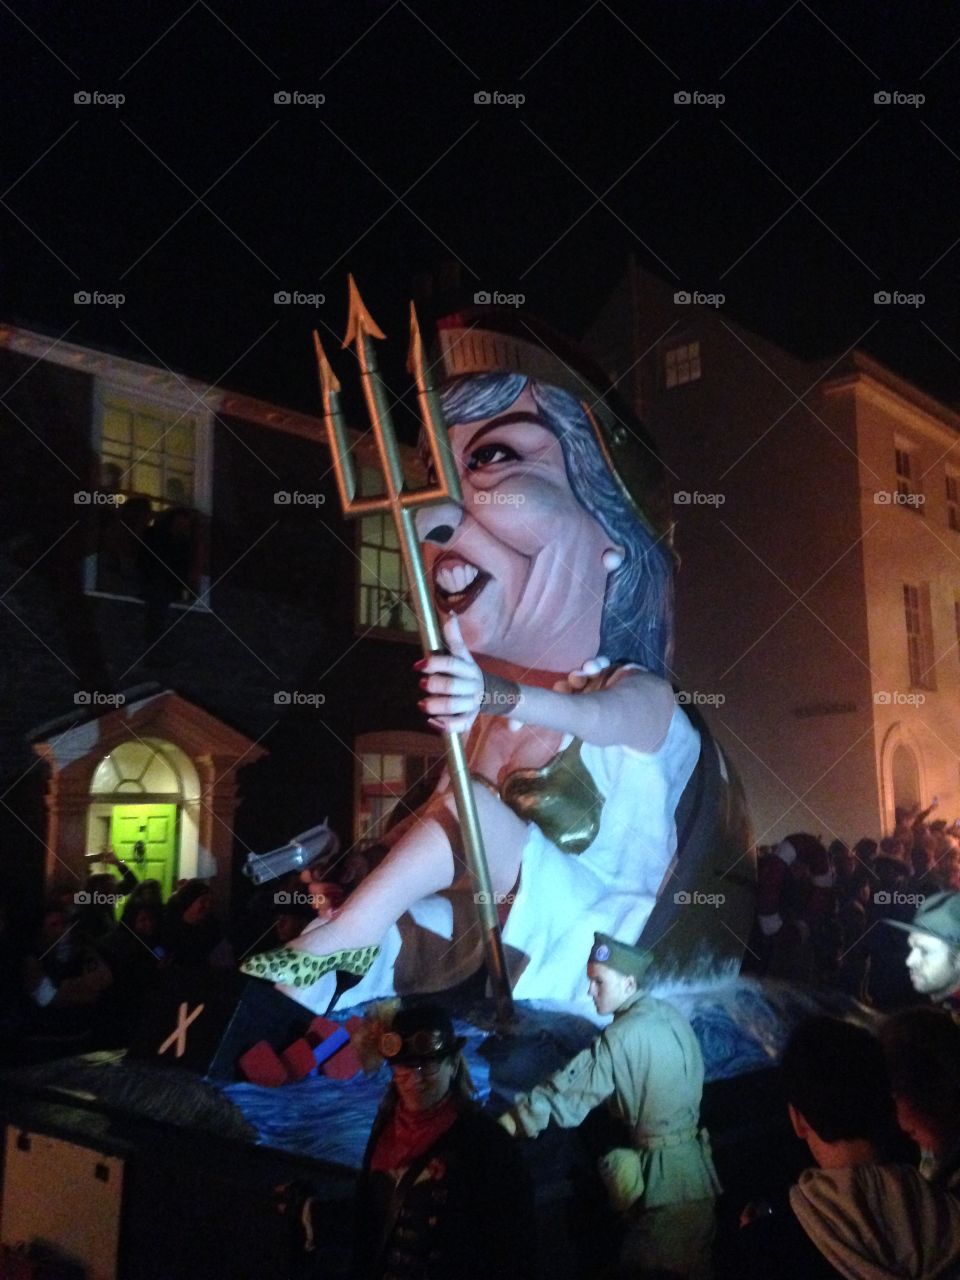 Theresa May effigy Lewes bonfire night procession 2017